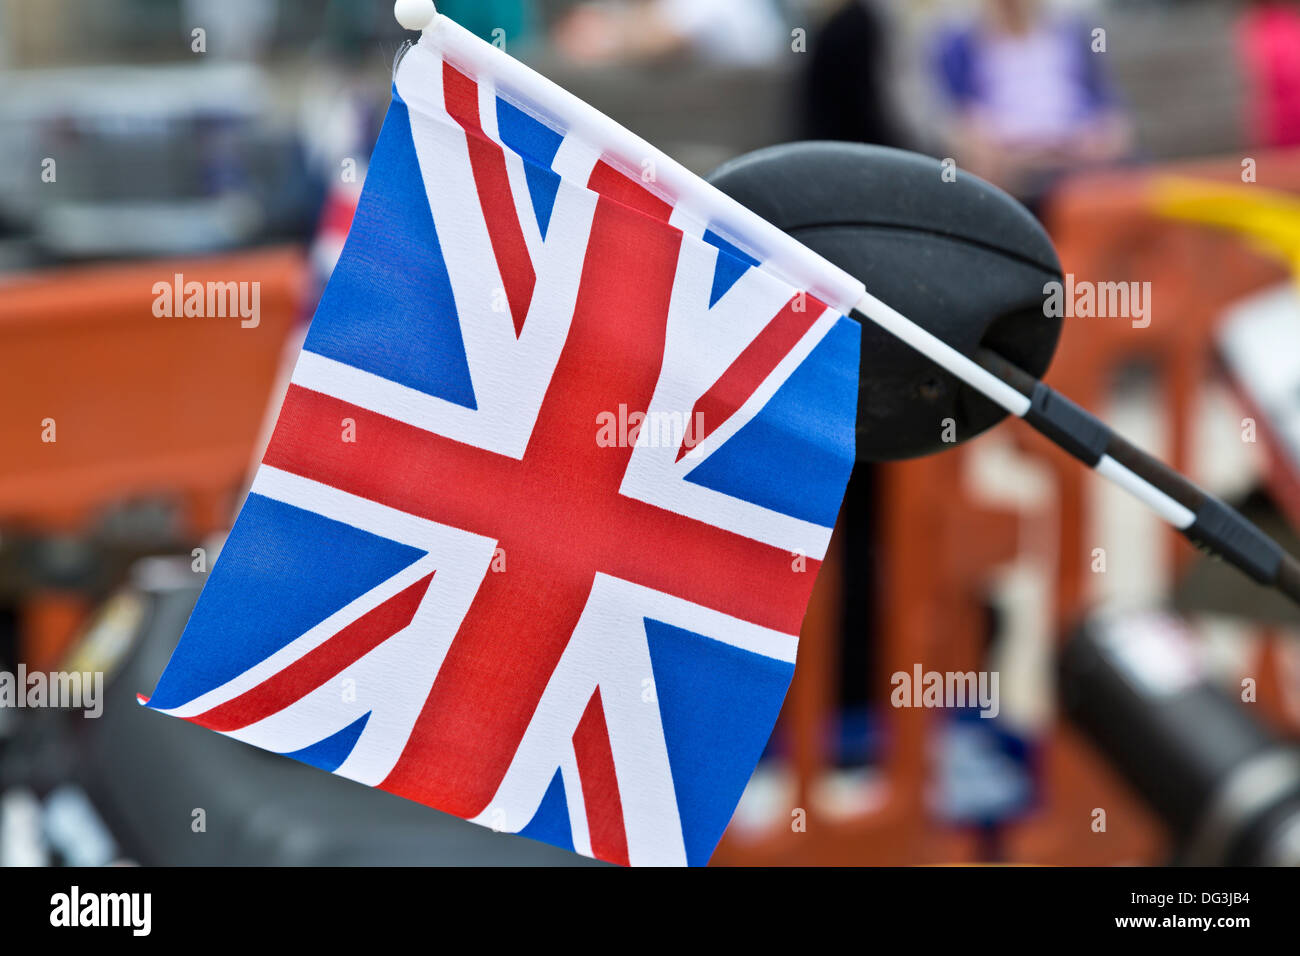 Union Jack-Fähnchen auf Motorrad - Rückspiegel stecken Stockfotografie -  Alamy